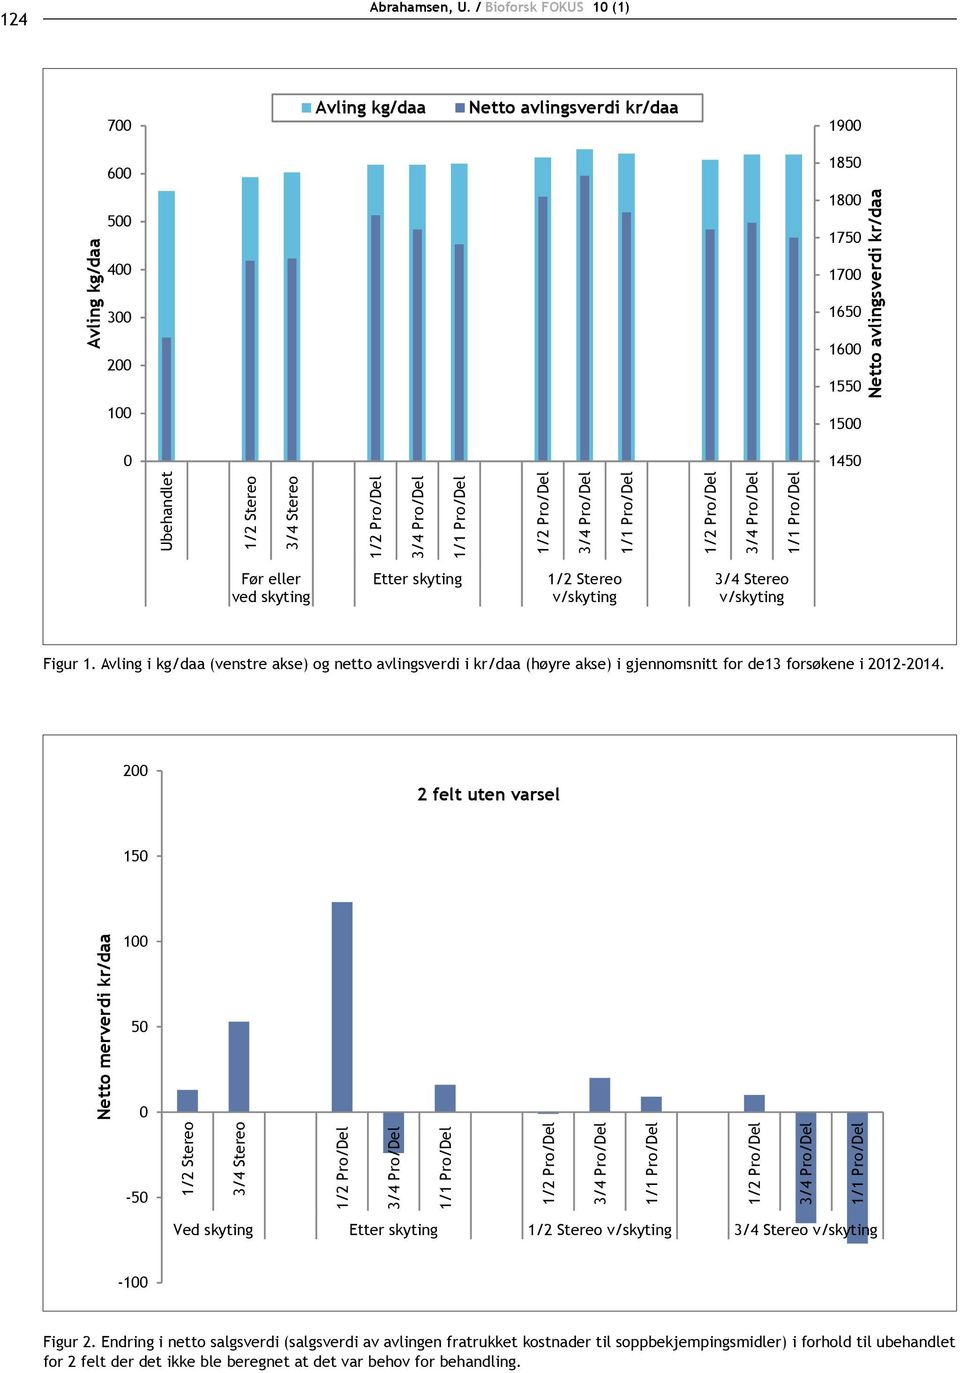 Avling i kg/daa (venstre akse) og netto avlingsverdi i kr/daa (høyre akse) i gjennomsnitt for de13 forsøkene i 2012-2014.